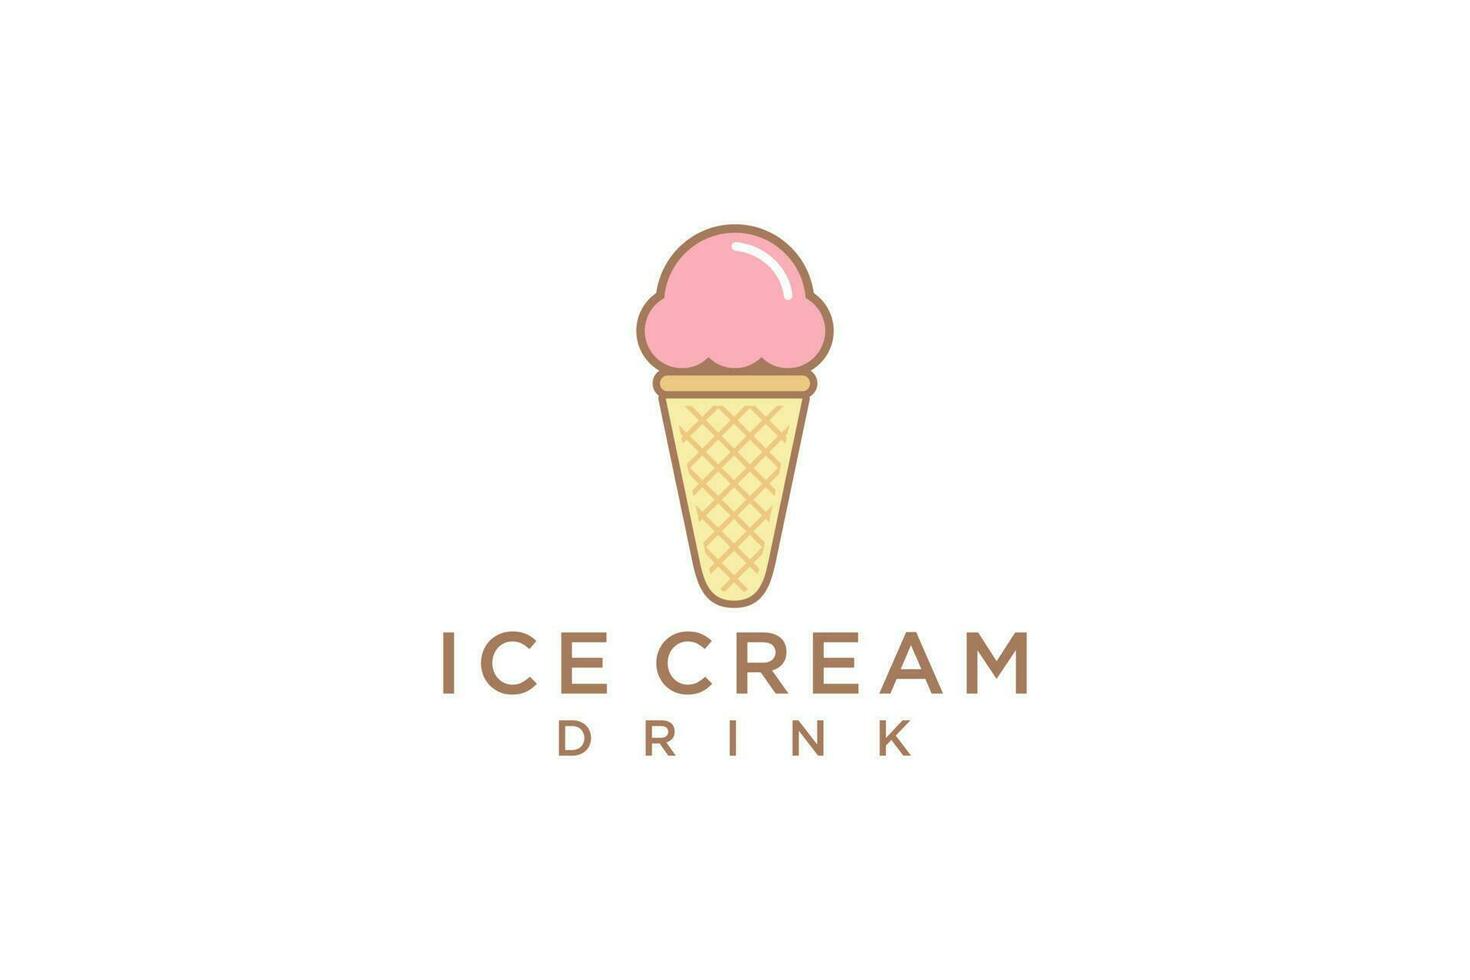 hielo crema prima logo. niños simpático concepto para sabroso hielo crema postre. vector